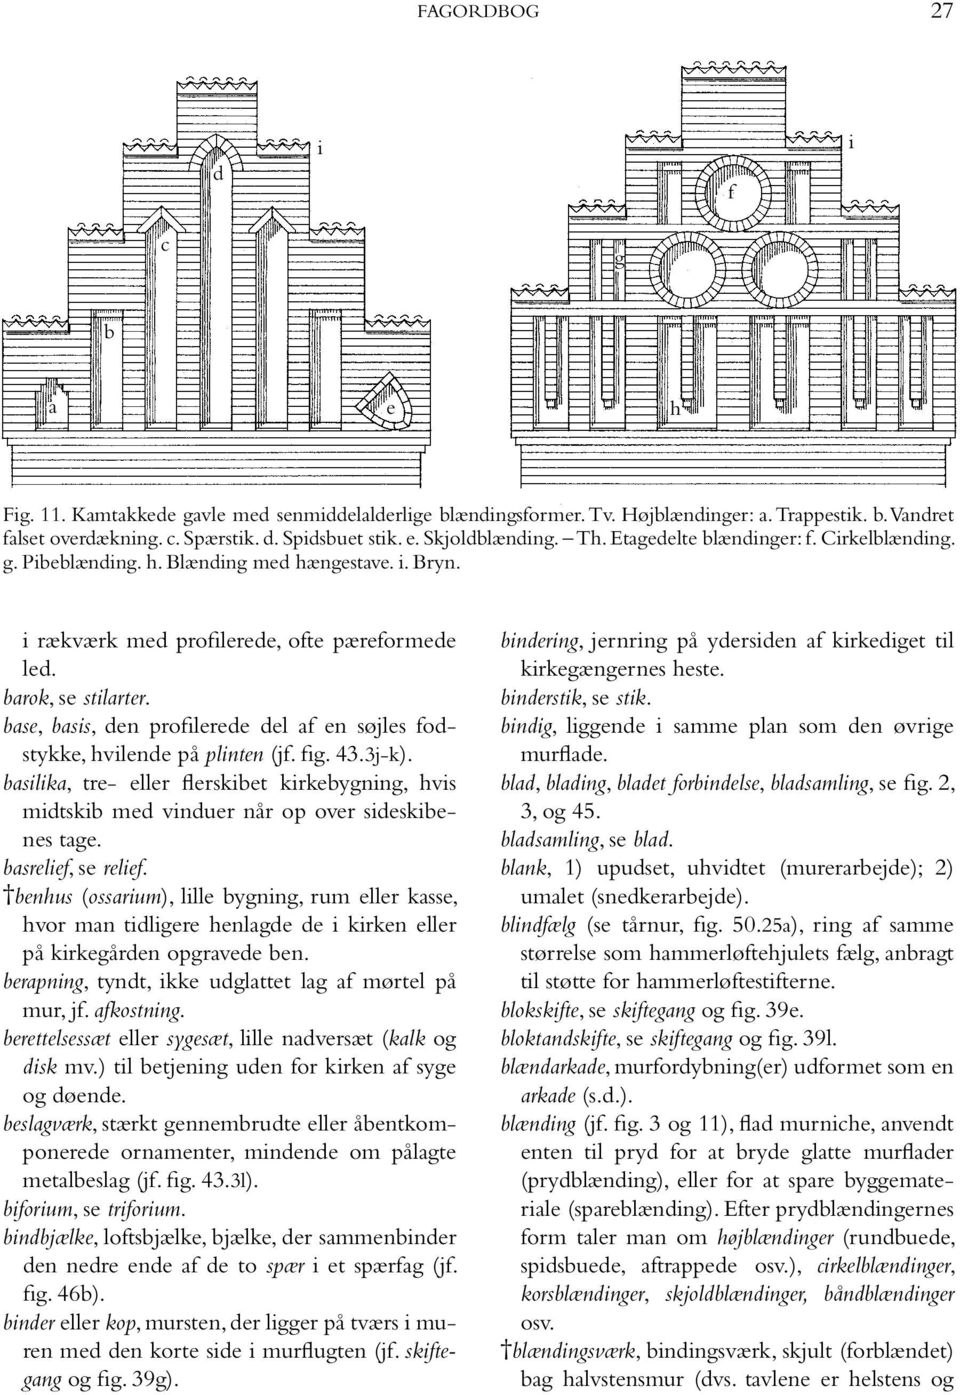 base, basis, den profilerede del af en søjles fodstykke, hvilende på plinten (jf. fig. 43.3j-k). basilika, tre- eller flerskibet kirkebygning, hvis midtskib med vinduer når op over sideskibenes tage.